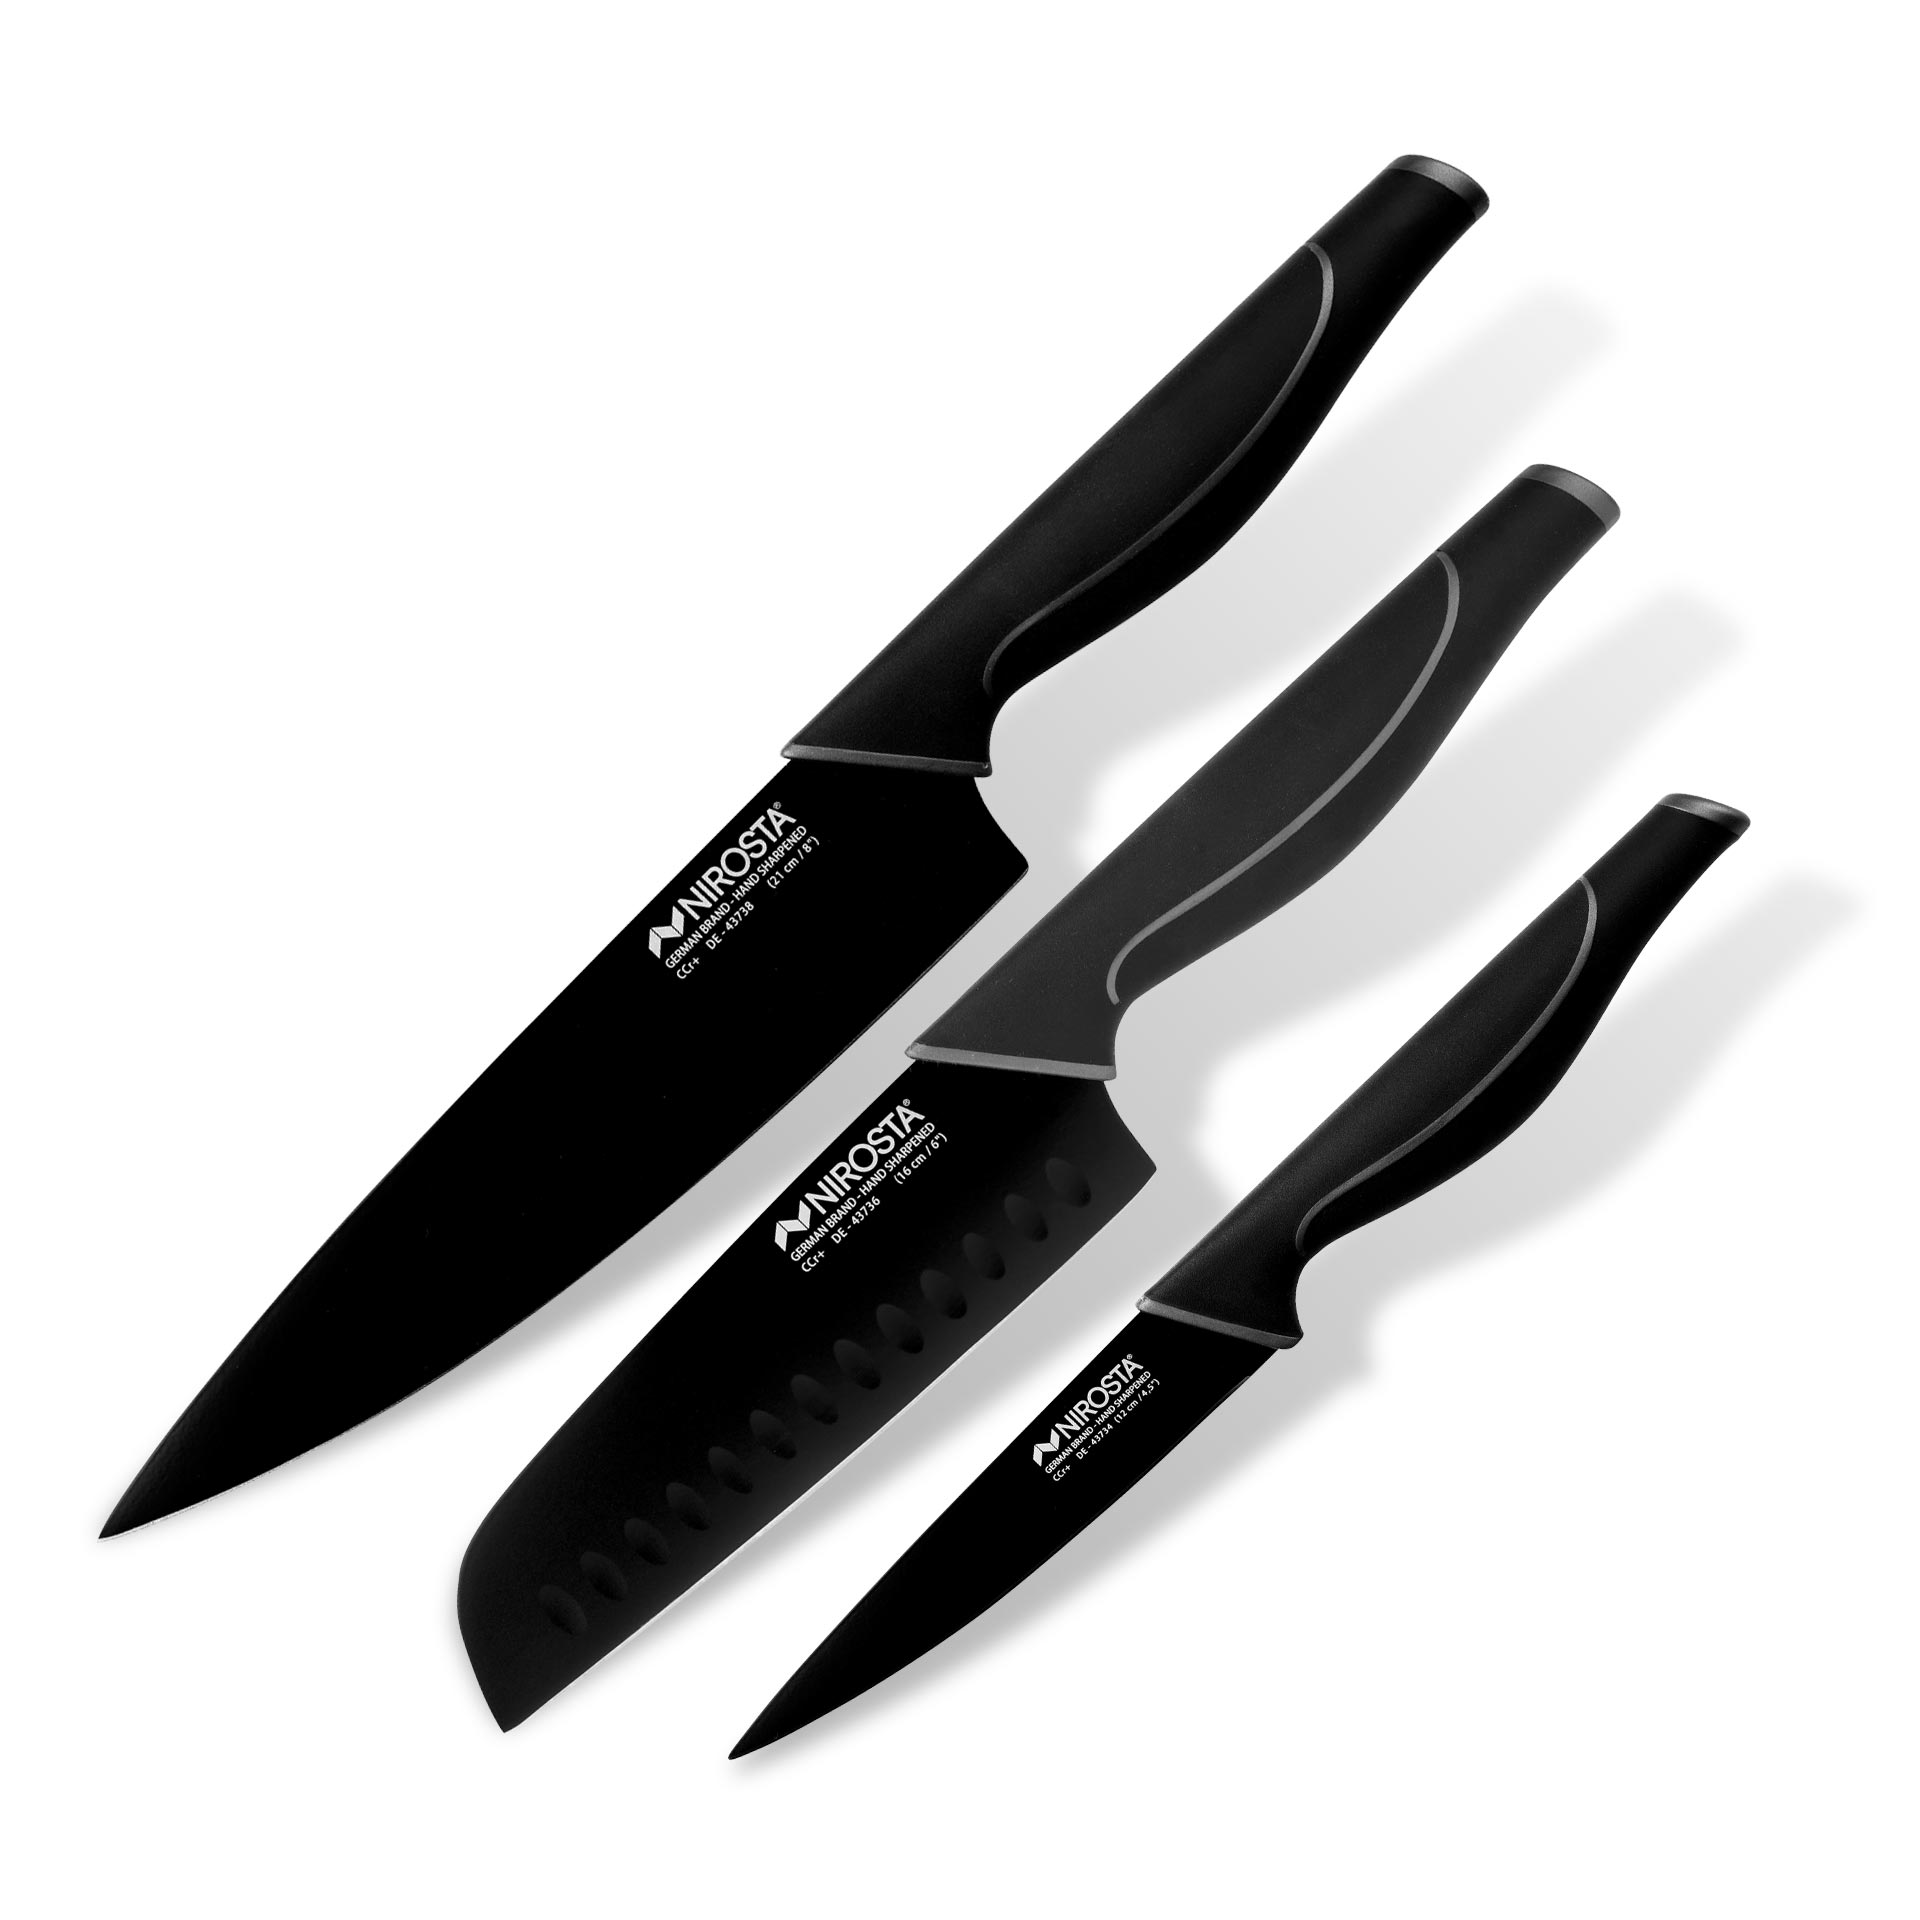 Set Cuchillos Nirosta Wave de 3 piezas: Cuchillo Santoku, Cuchillo Multiusos, Cuchillo de Chef - Marca Fackelmann, mango ergonómico, acero inoxidable de alta calidad